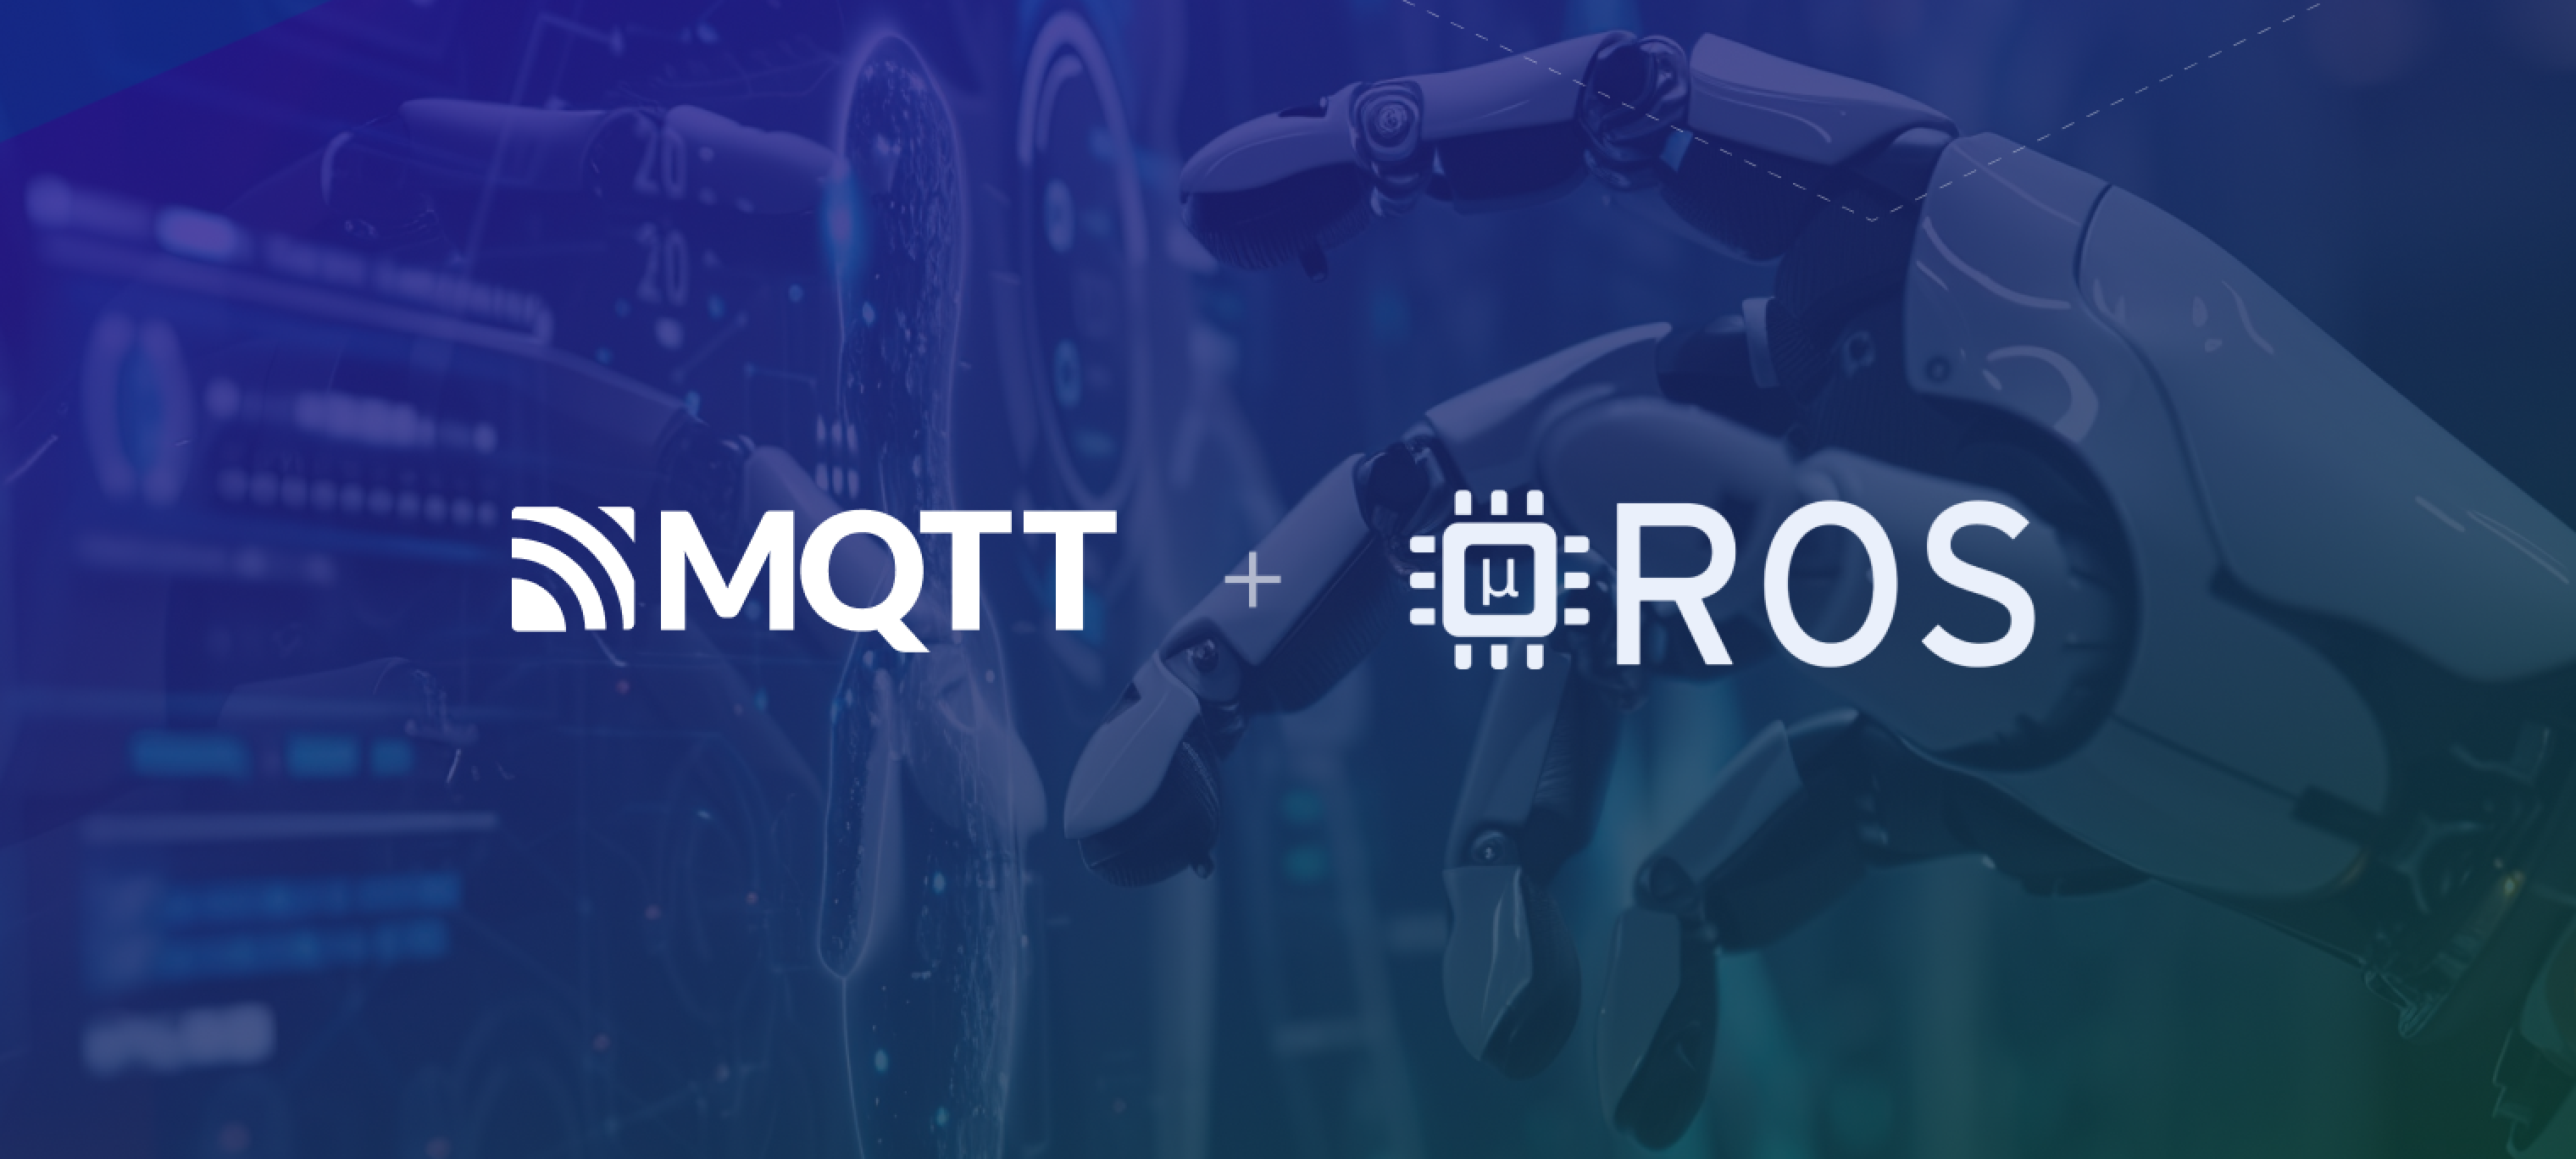 MQTT & micro-ROS: Building Efficient Robotics Applications